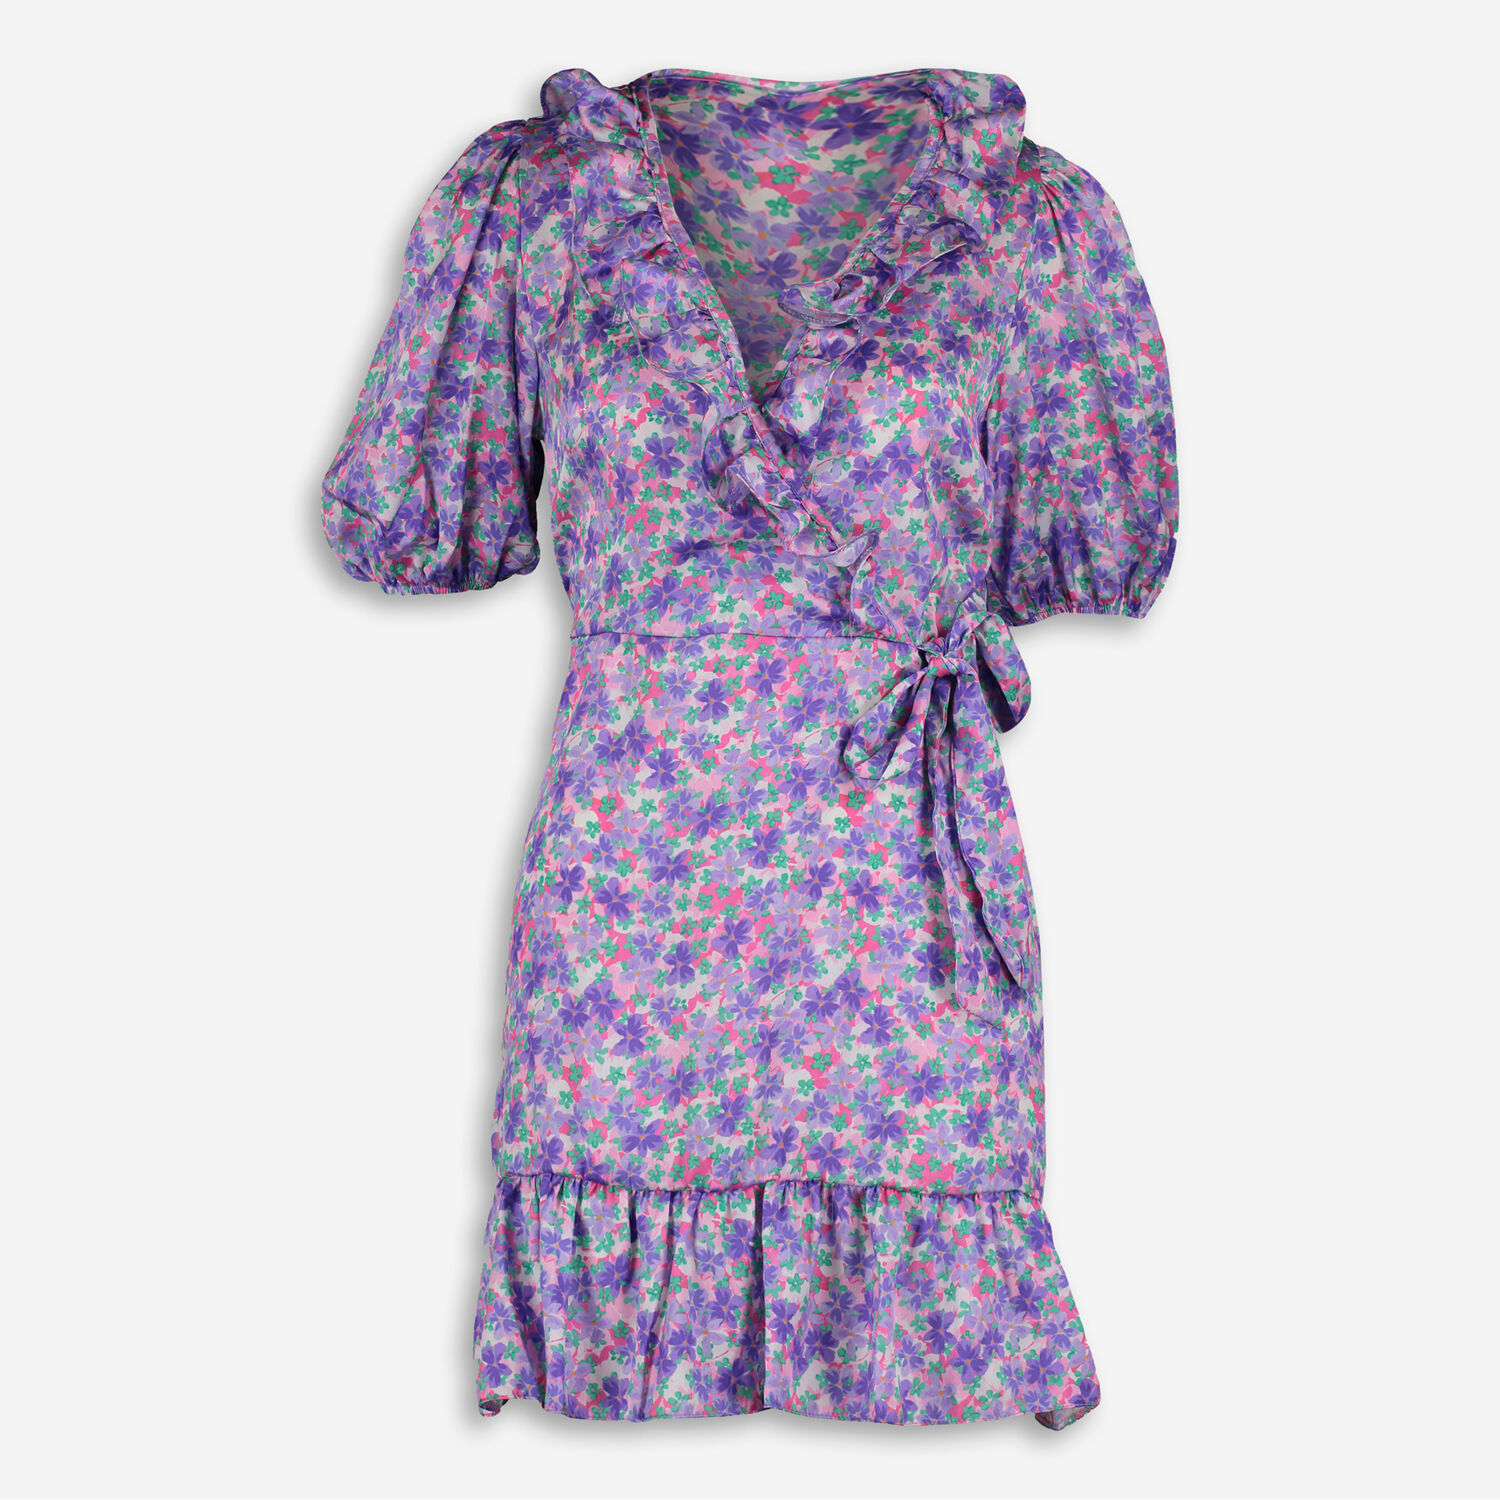 Purple Floral Dress - TK Maxx UK